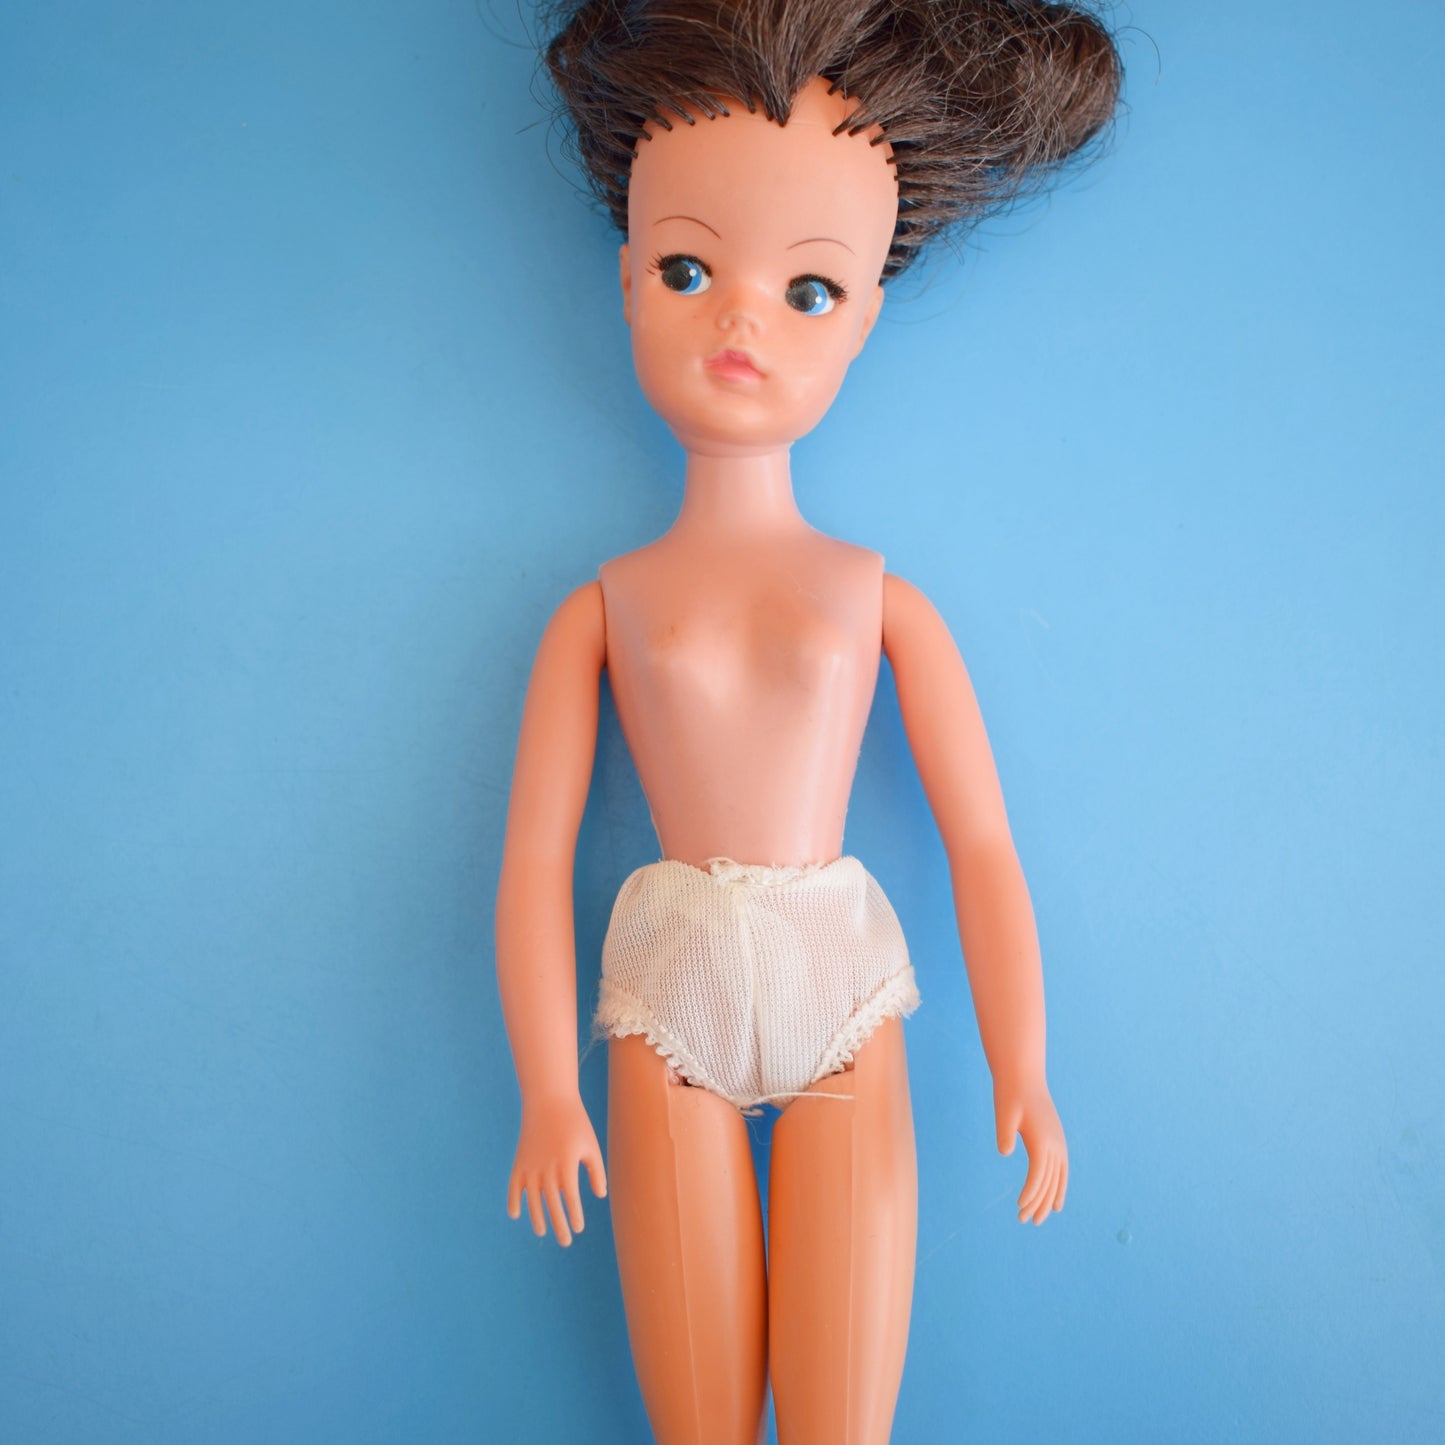 Vintage 1980s Sindy Doll - Dark Hair